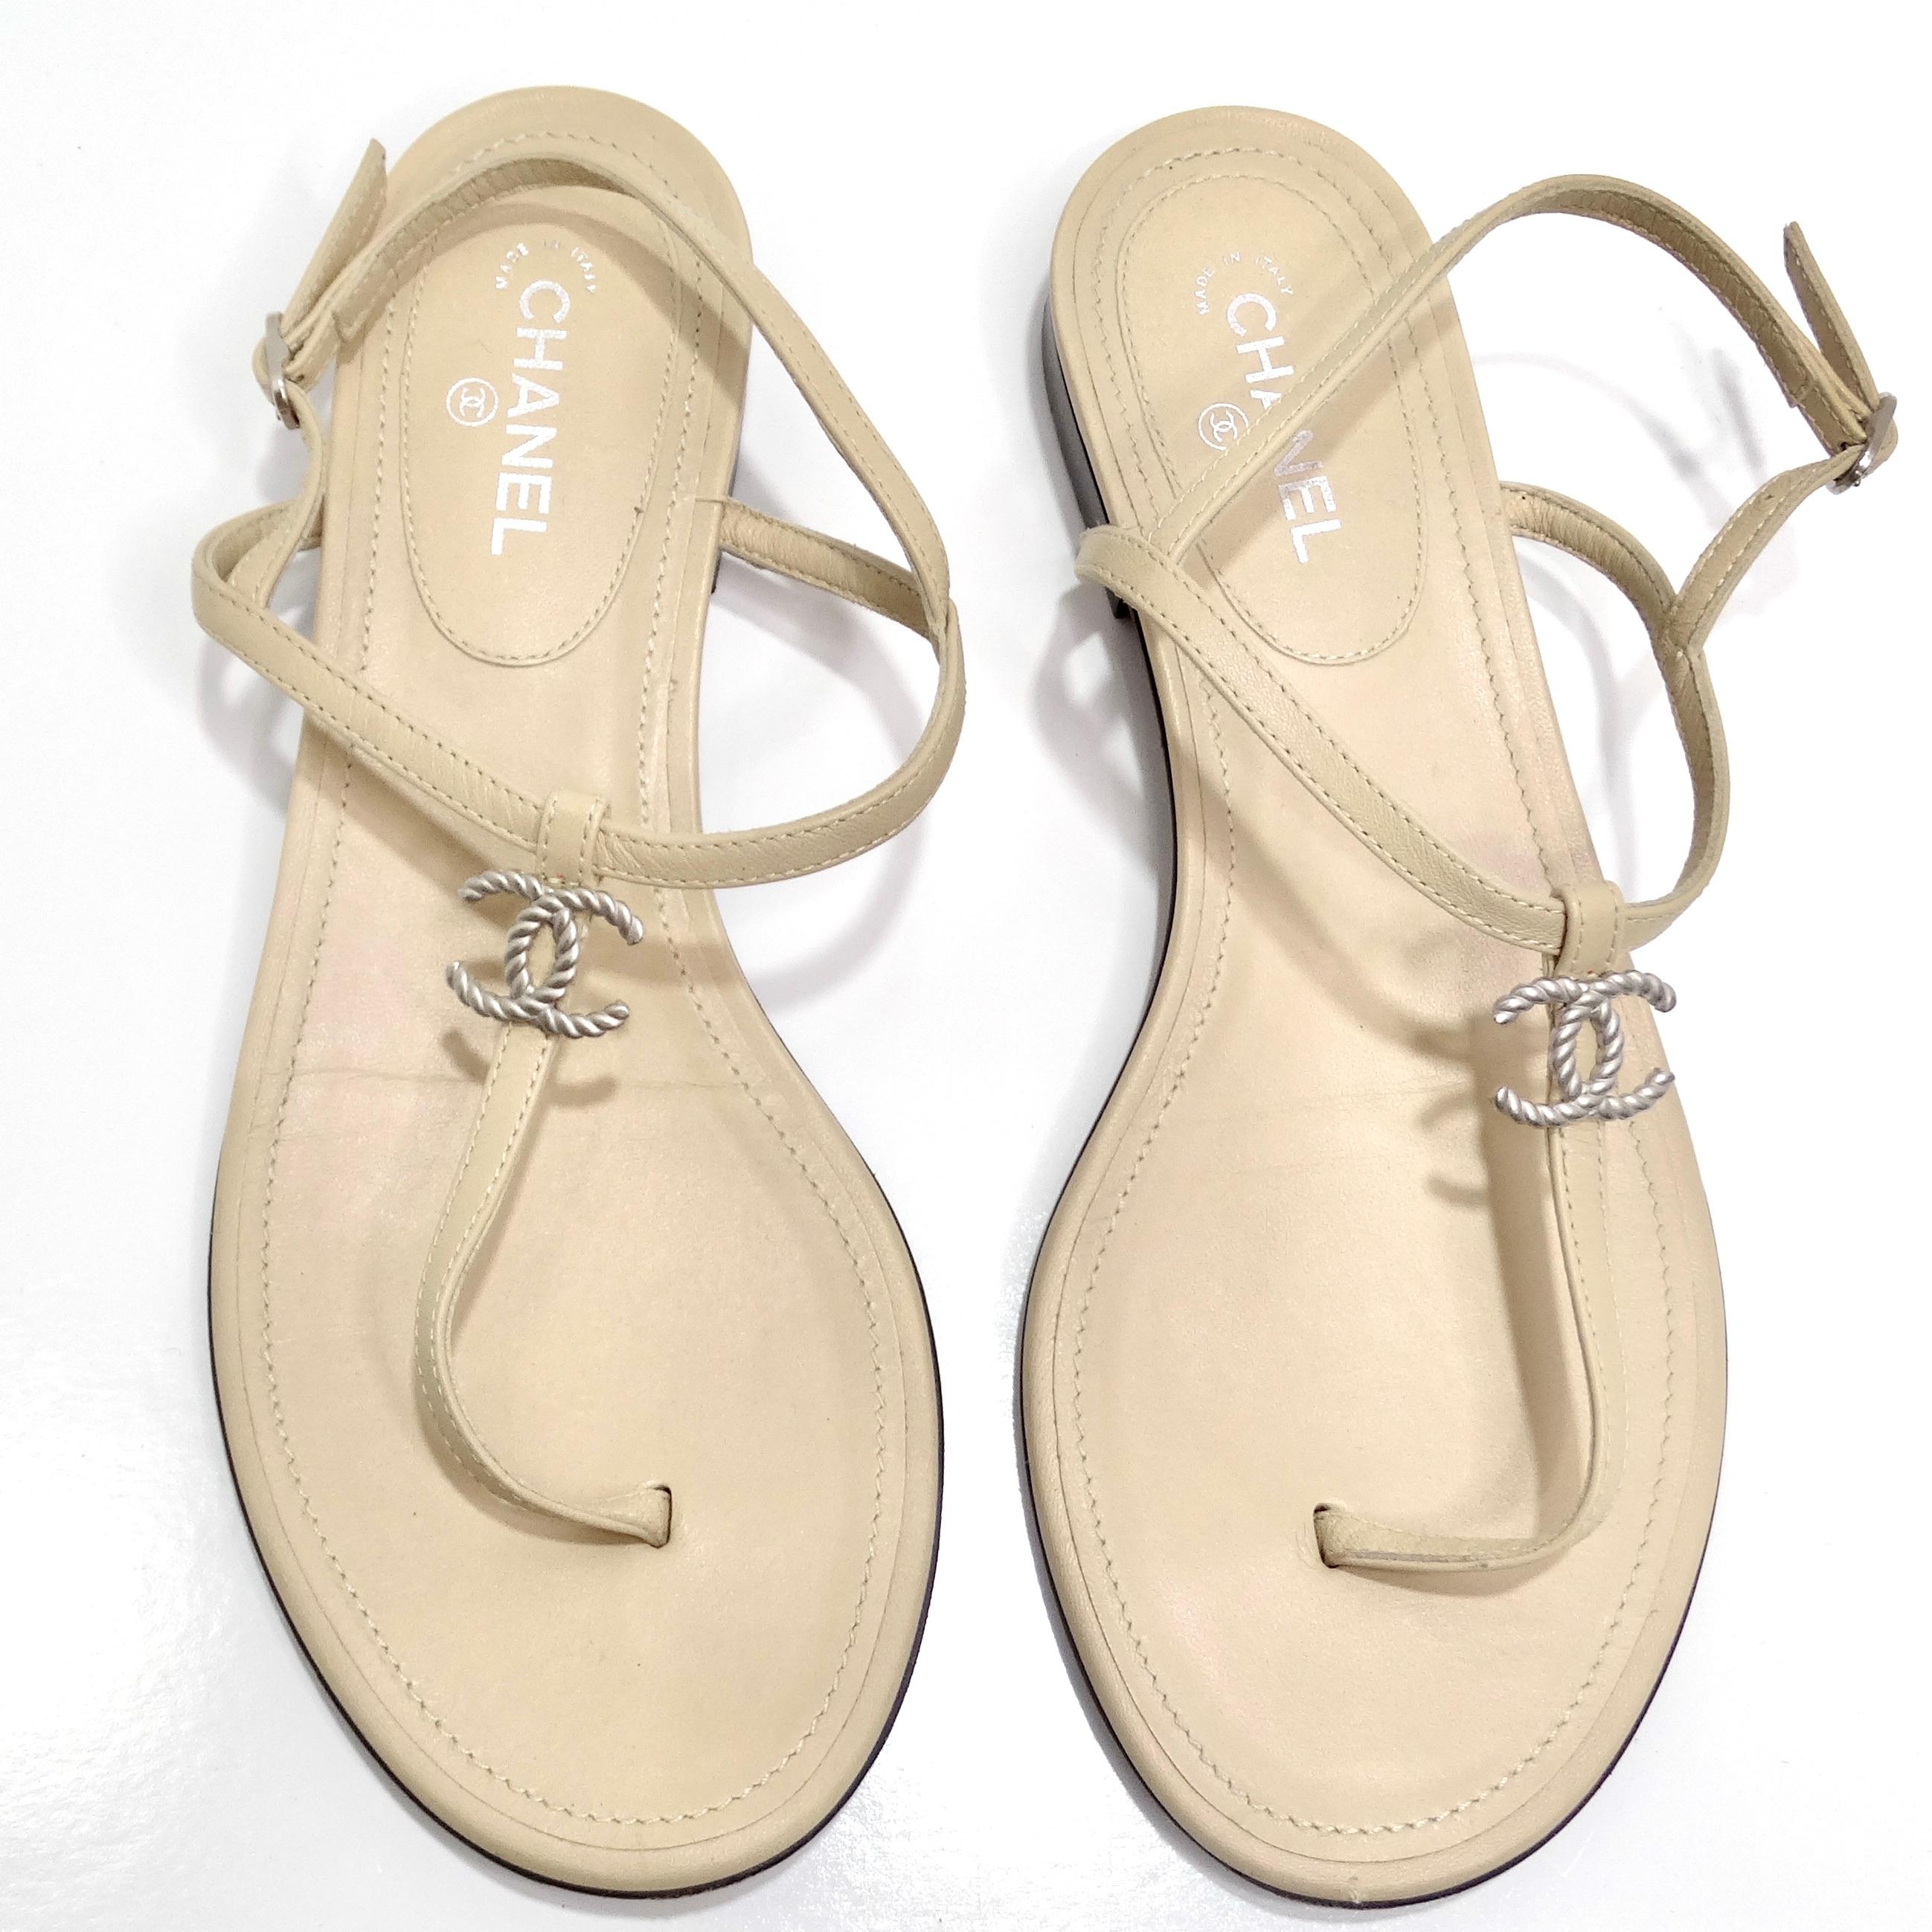 Découvrez l'élégance intemporelle des sandales en cuir Chanel CC T Strap, un ajout classique et polyvalent à votre collection de chaussures. Confectionnées dans un luxueux cuir beige, ces sandales à lanières présentent un design en forme de T qui